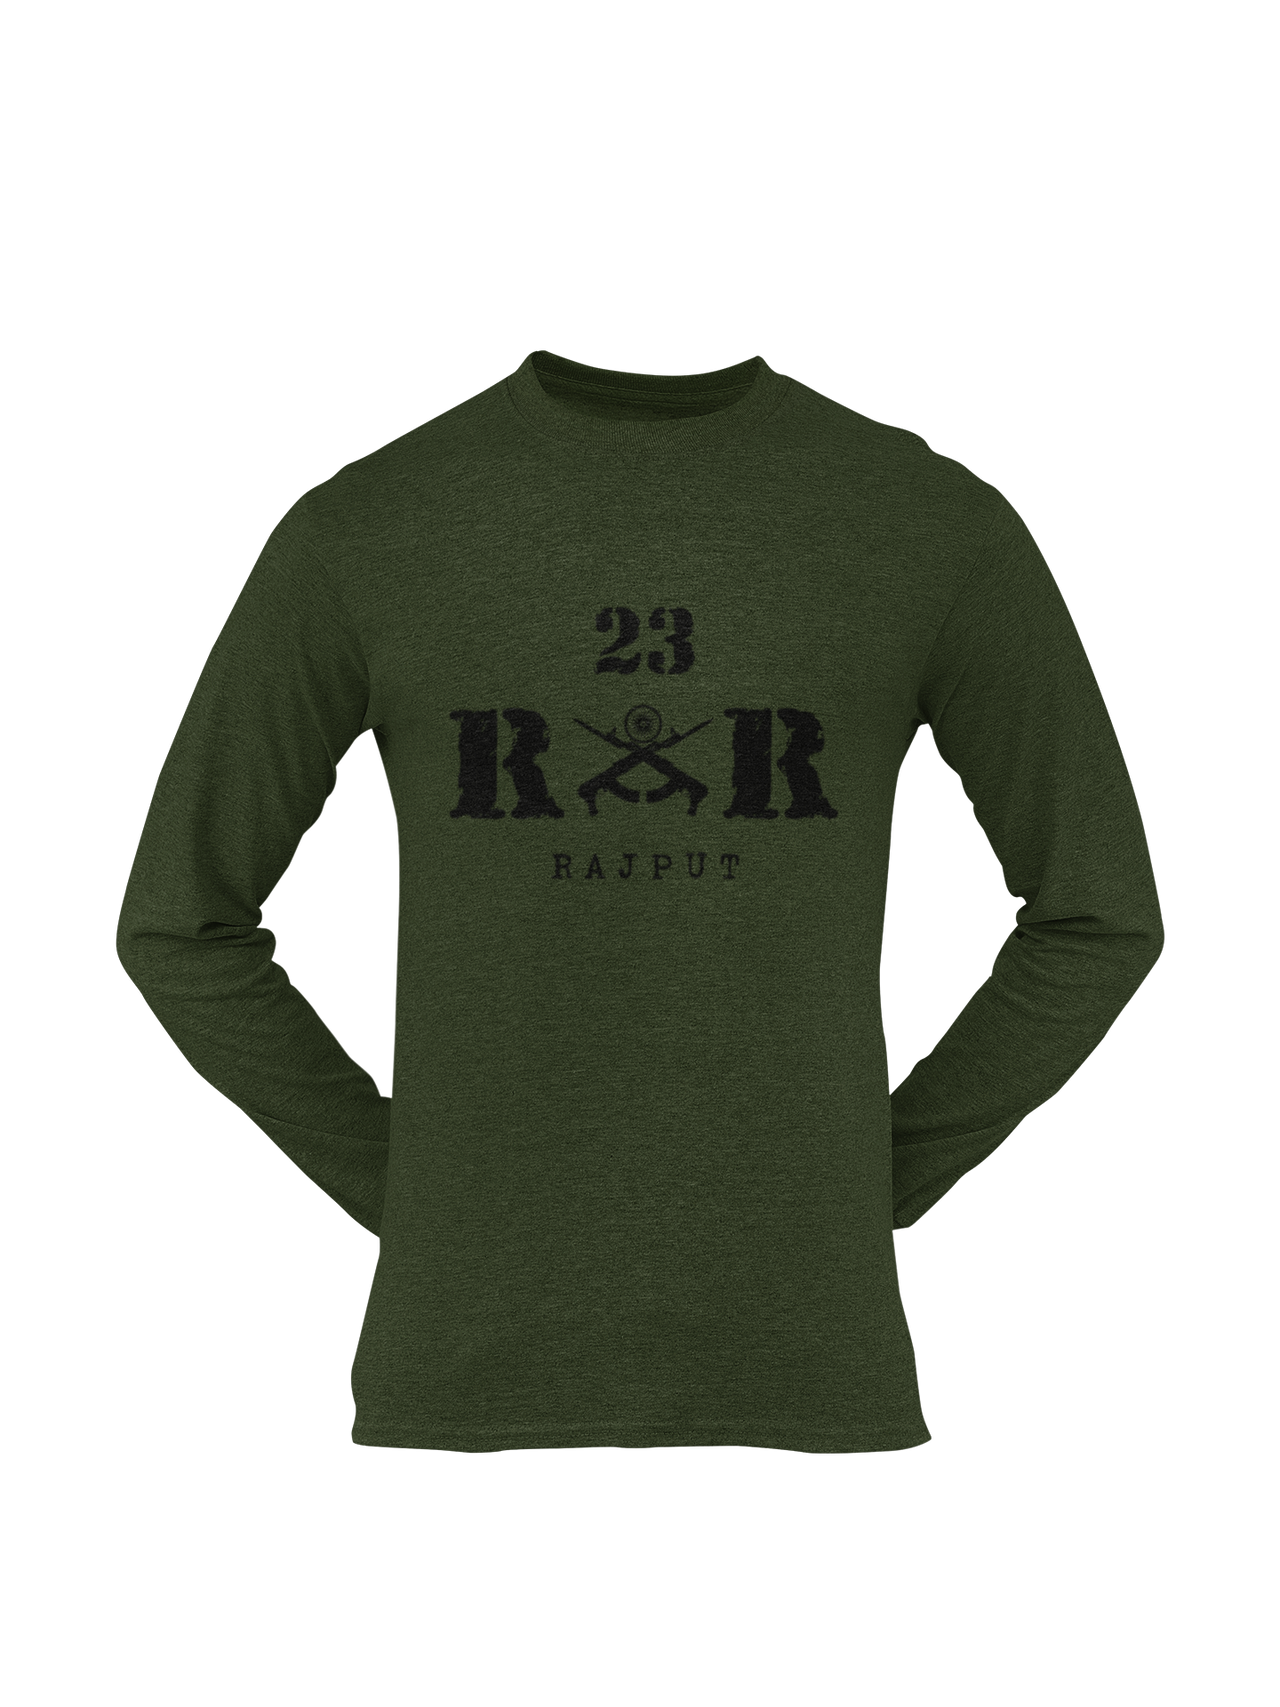 Rashtriya Rifles T-shirt - 23 RR Rajput (Men)